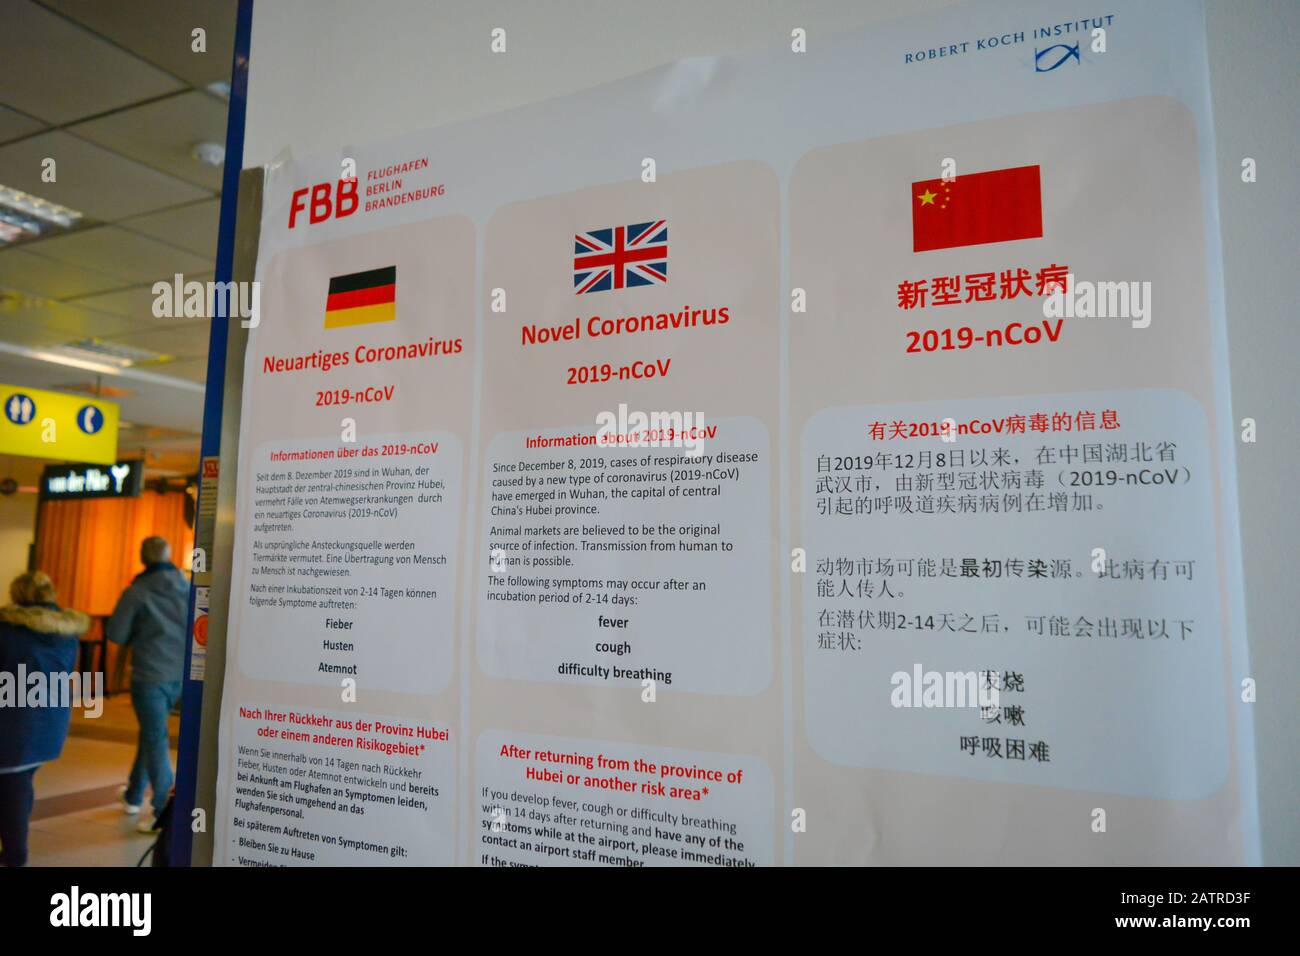 Aéroport de Berlin Schonefeld SXF, Allemagne - 02/01/20: Avertissement sur la maladie épidémique de Coronavirus 2019-nCoV en allemand, anglais et chinois Banque D'Images